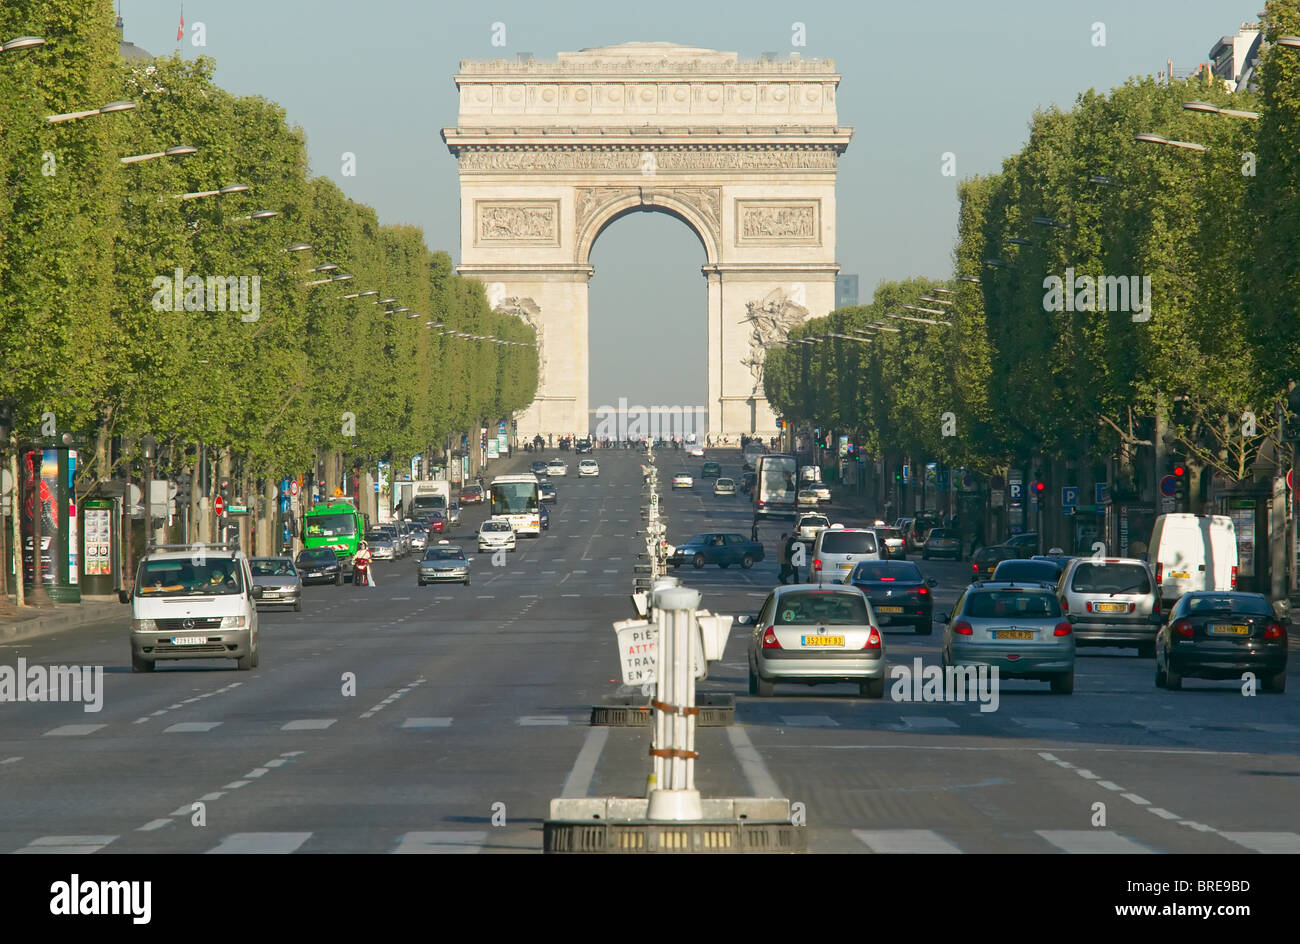 File:Avenue des Champs-Elysées from top of Arc de triomphe Paris